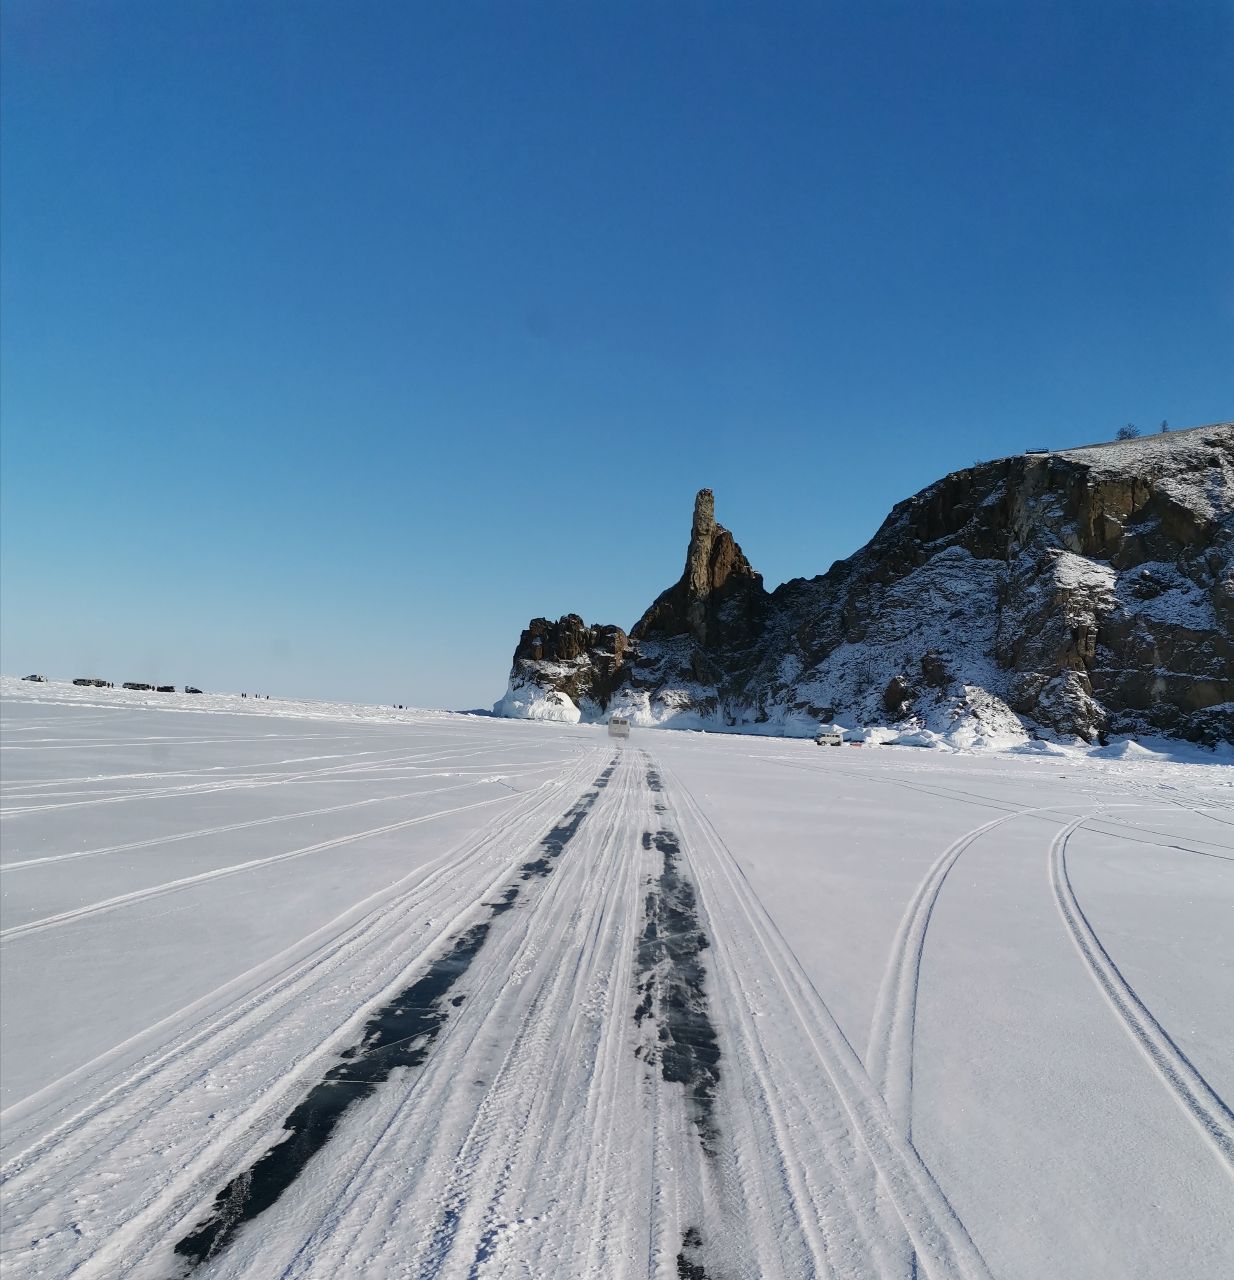 А теперь к мысу Хобой по ледяной дороге. - Поездка на зимний Байкал 5-13 февраля 2021 год.